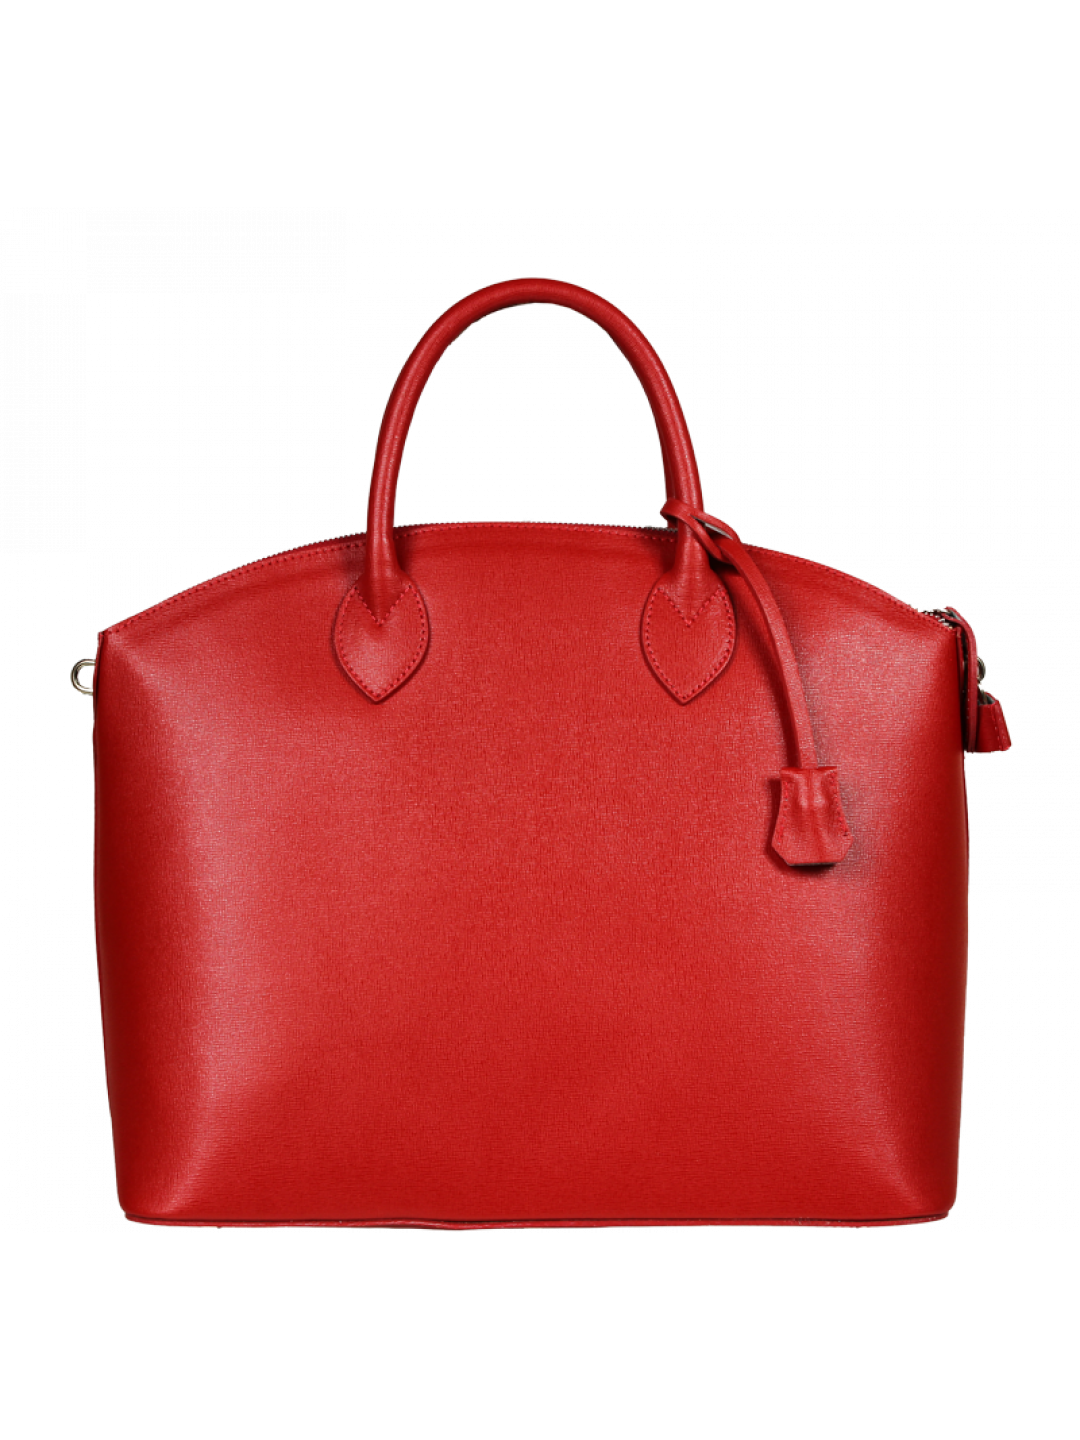 Červená kabelka do ruky Ofelia Rossa